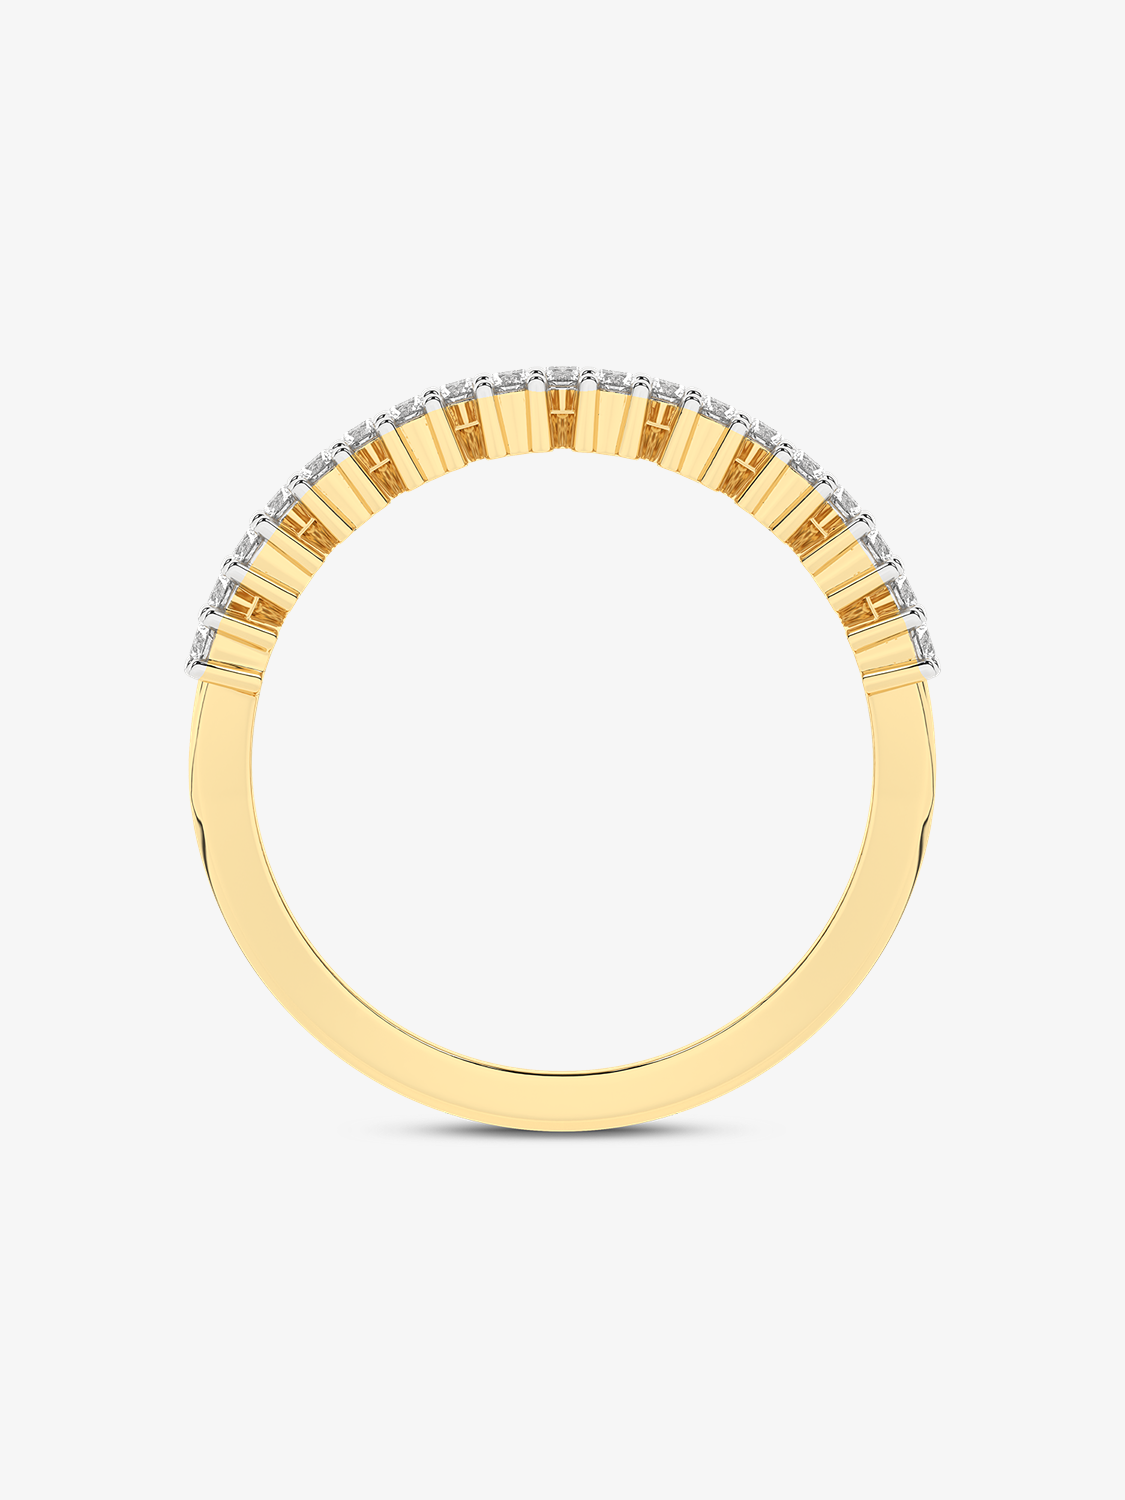 Złoty sygnet designerski z brylantami - Venetia Jewels - 14K złoto z brylantami